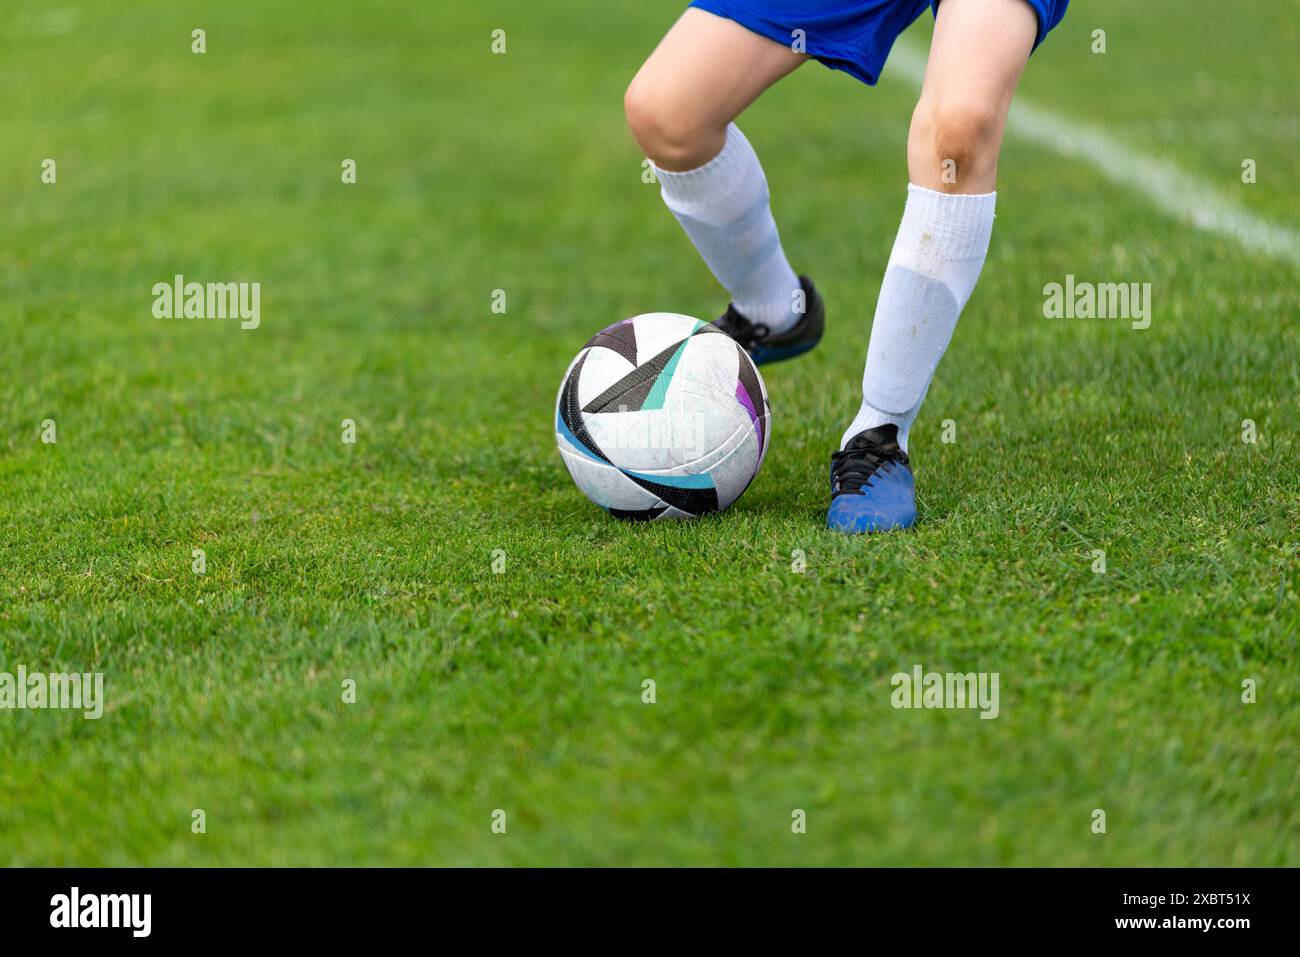 Ballon de coup de pied d'un jeune footballeur. Balle et jambes nettes sur un terrain vert luxuriant gros plan Banque D'Images